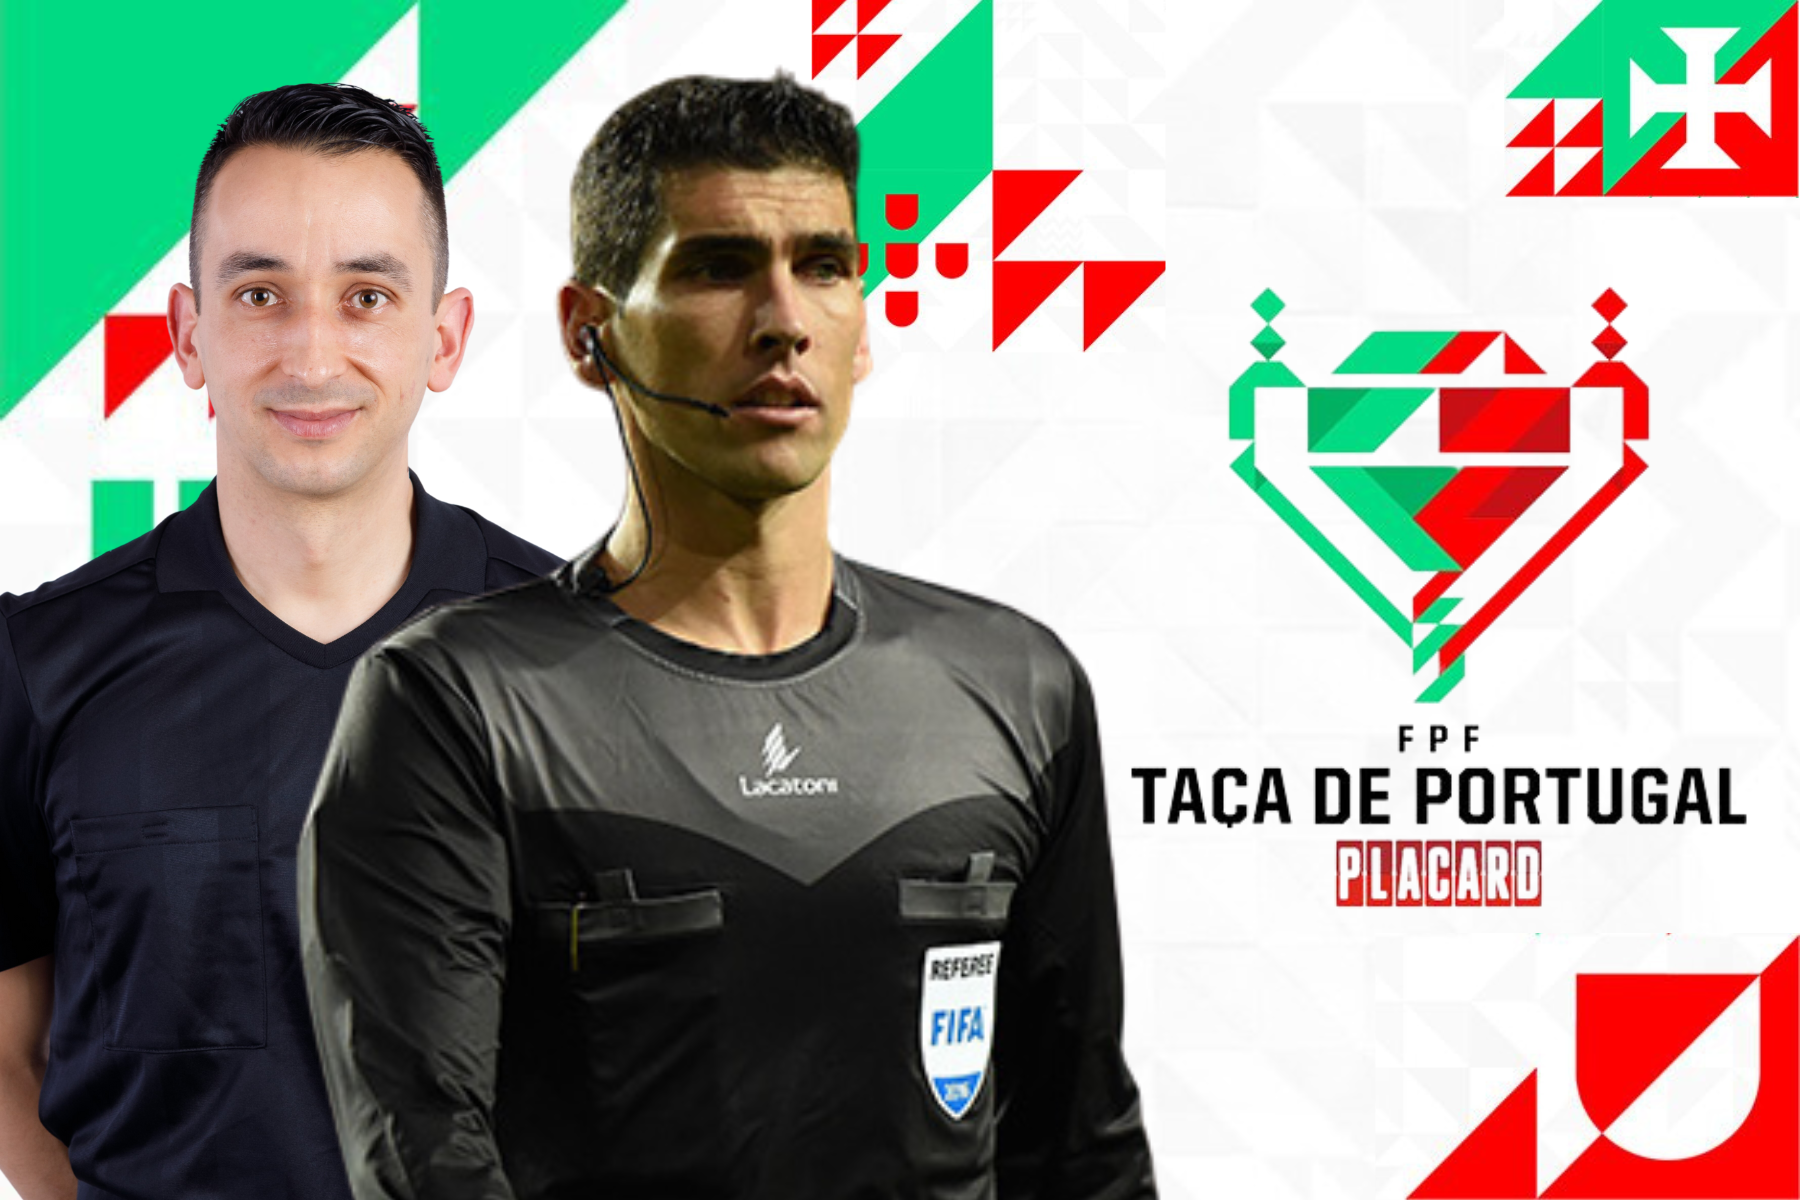 Arbitragem Leiriense na Final da Taça de Portugal Placard